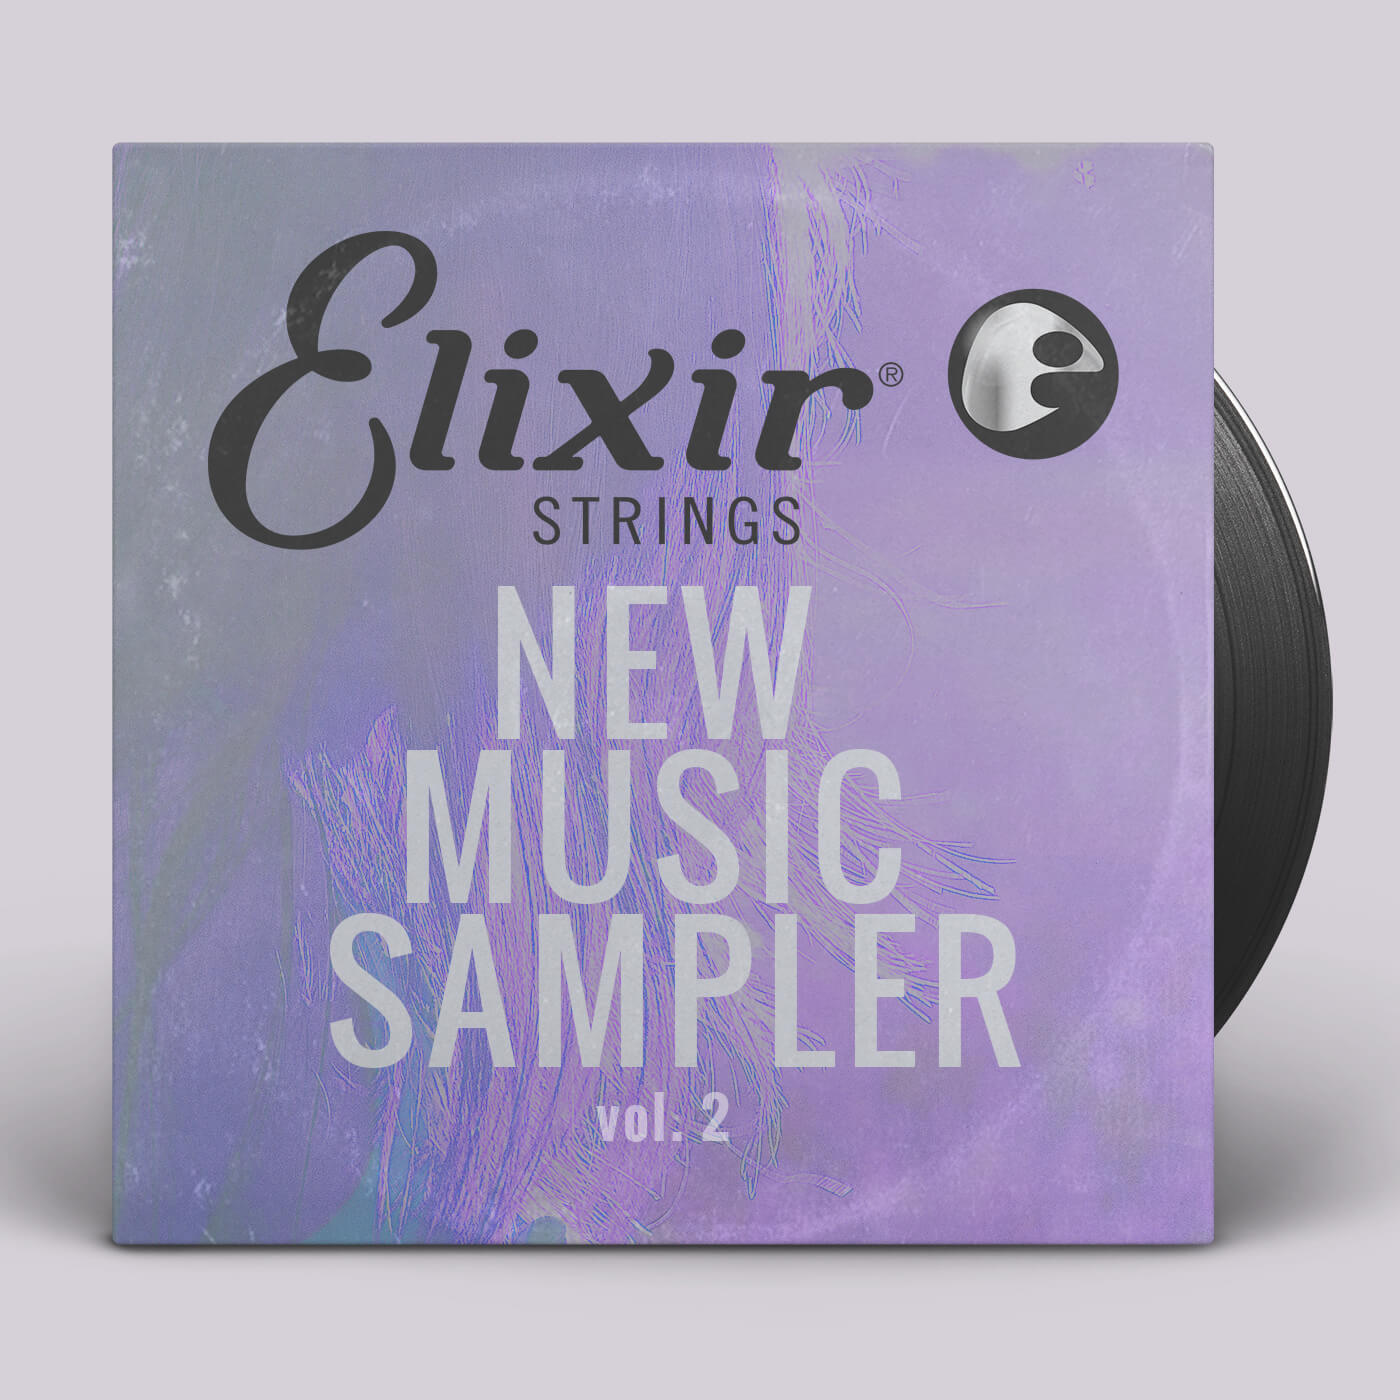 Stream the FREE Elixir Strings New Music Sampler Vol. 2